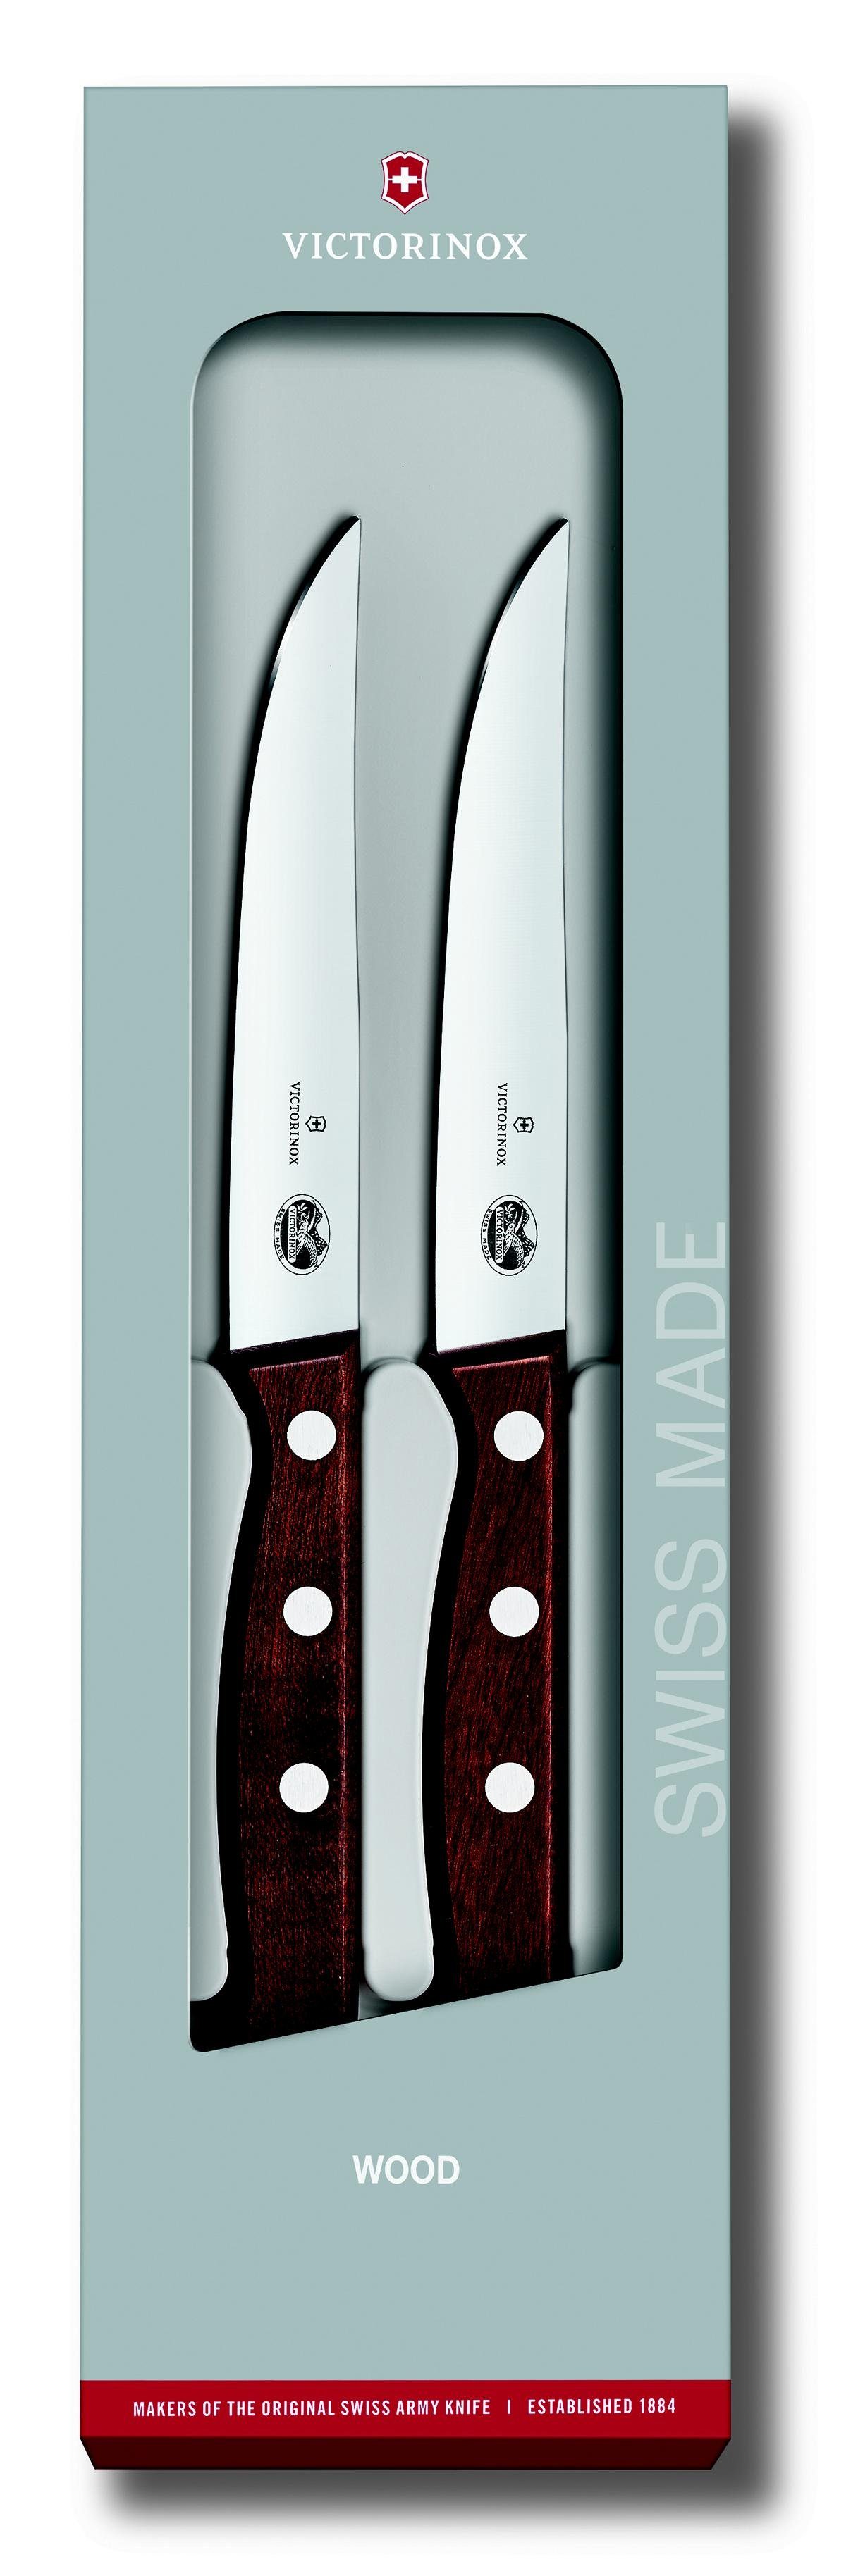 Victorinox Taschenmesser Steakmesser-Set, mod Ahornholz, Schliff,12 cm,2-teilig,Gesch. ger